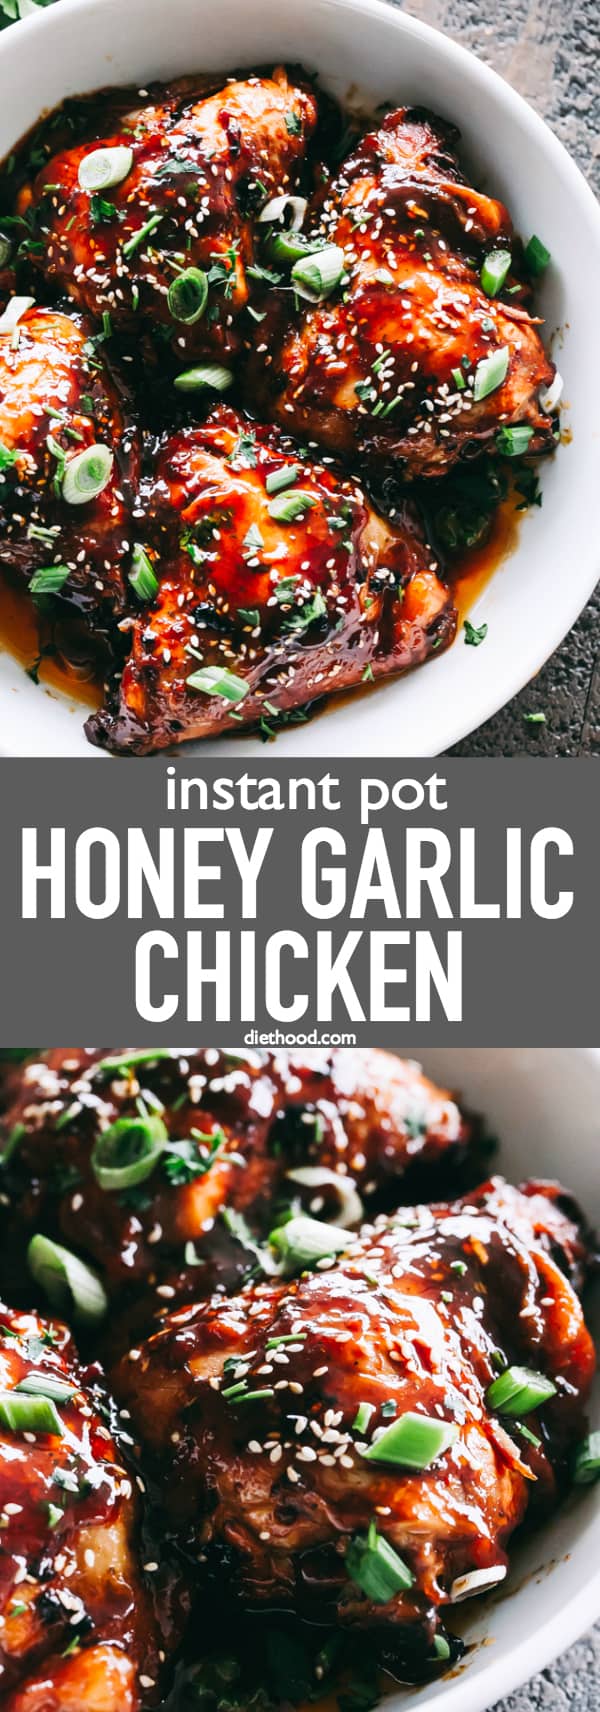 Instant Pot Honey Garlic Chicken Thighs Recipe | Chicken Dinner Idea